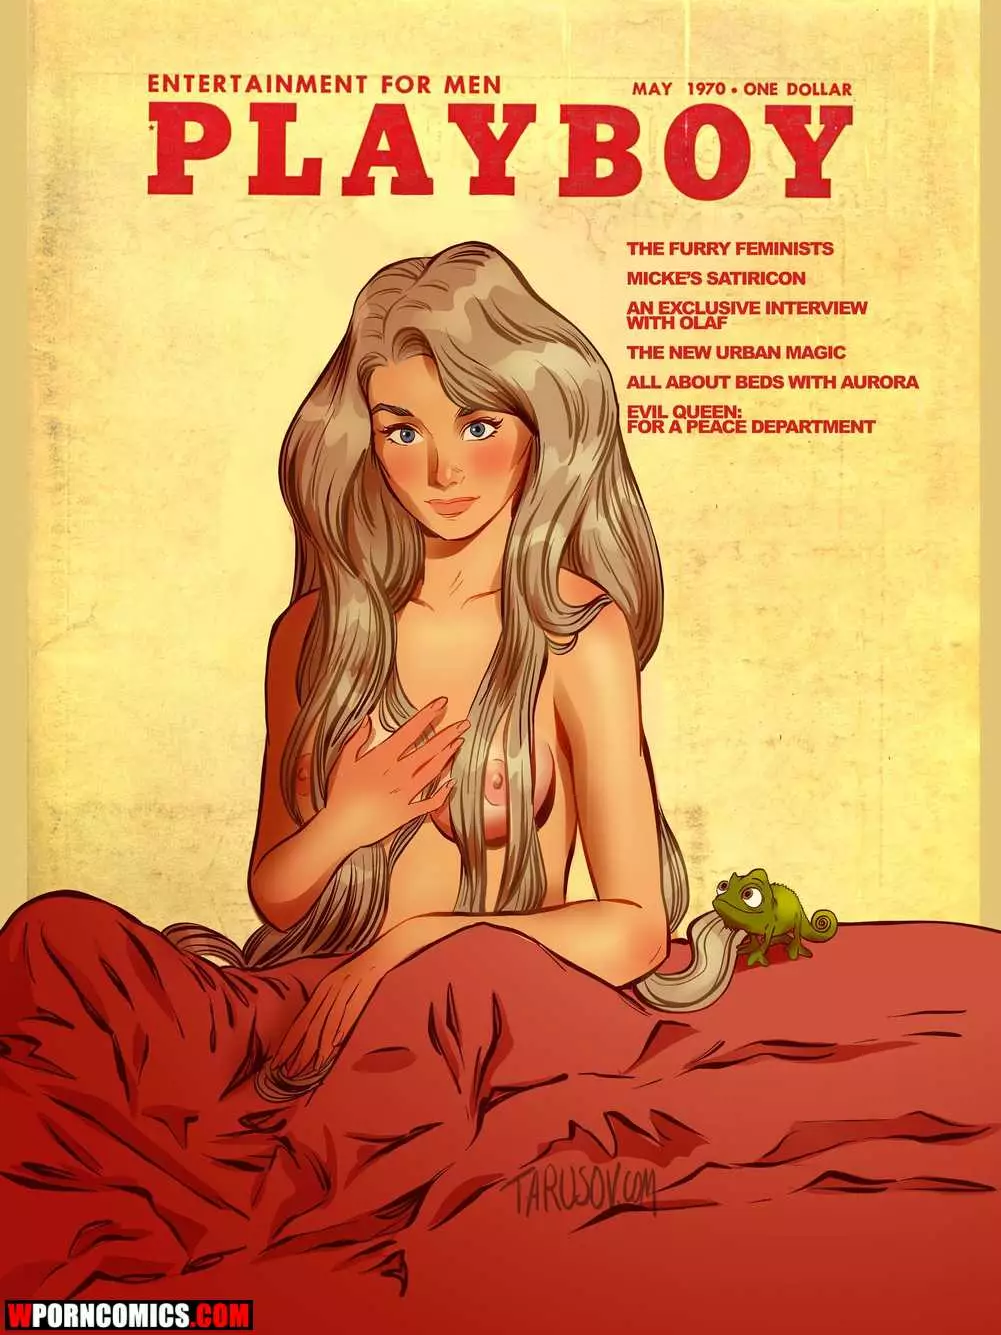 âœ…ï¸ Porn comic Playboy Disney Princesses. Andrew Tarusov. Sex comic great  selection of âœ…ï¸ | Andrew Tarusov | Porn comics hentai adult only |  wporncomics.com